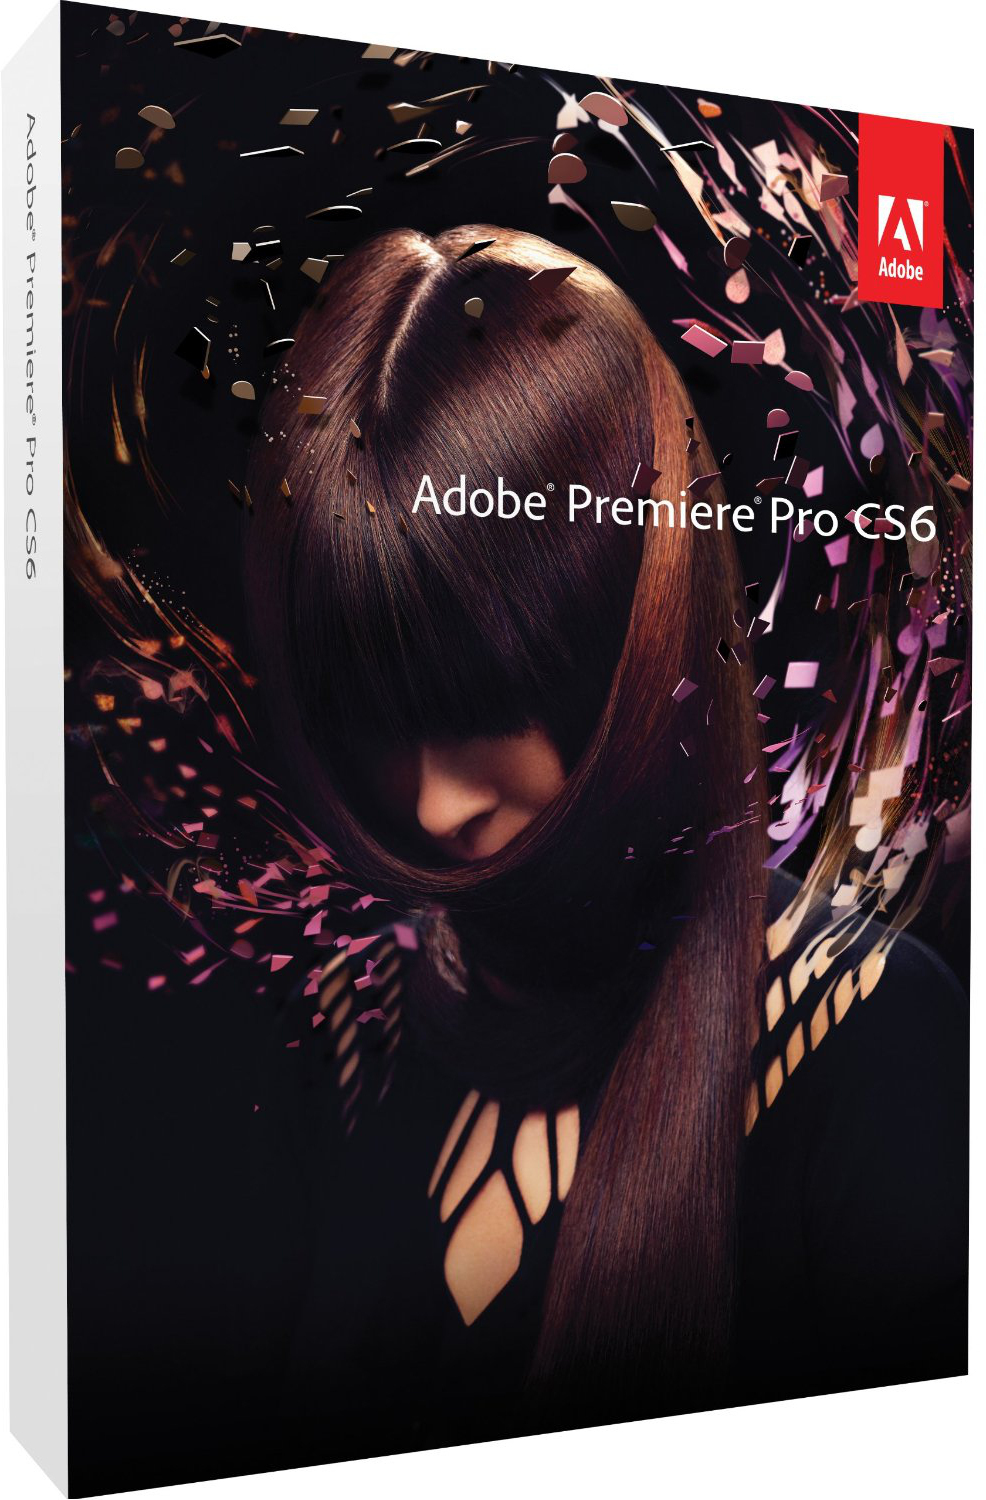 Adobe Premiere Pro CS6 til Mac